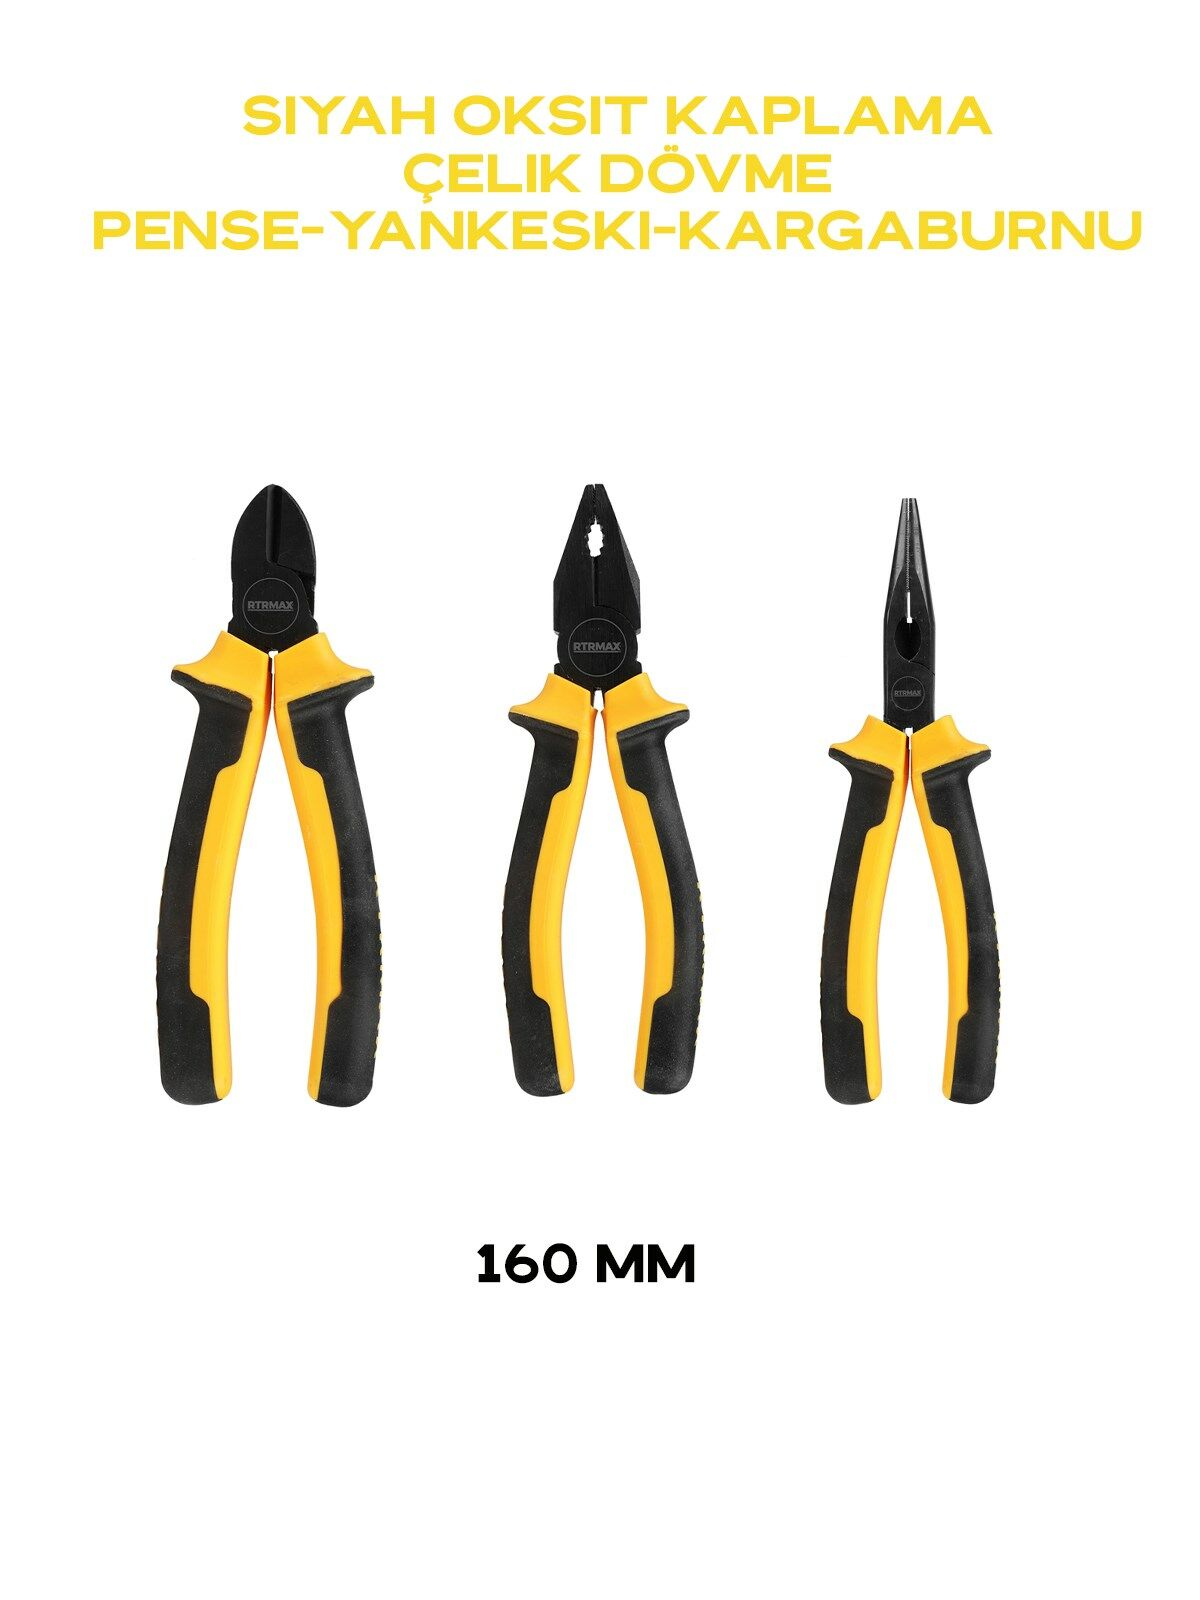 160 mm Siyah Oksit Kaplama Çelik Dövme PVC Sap Üstün Kalite Yankeski-Pense-Kargaburnu Set